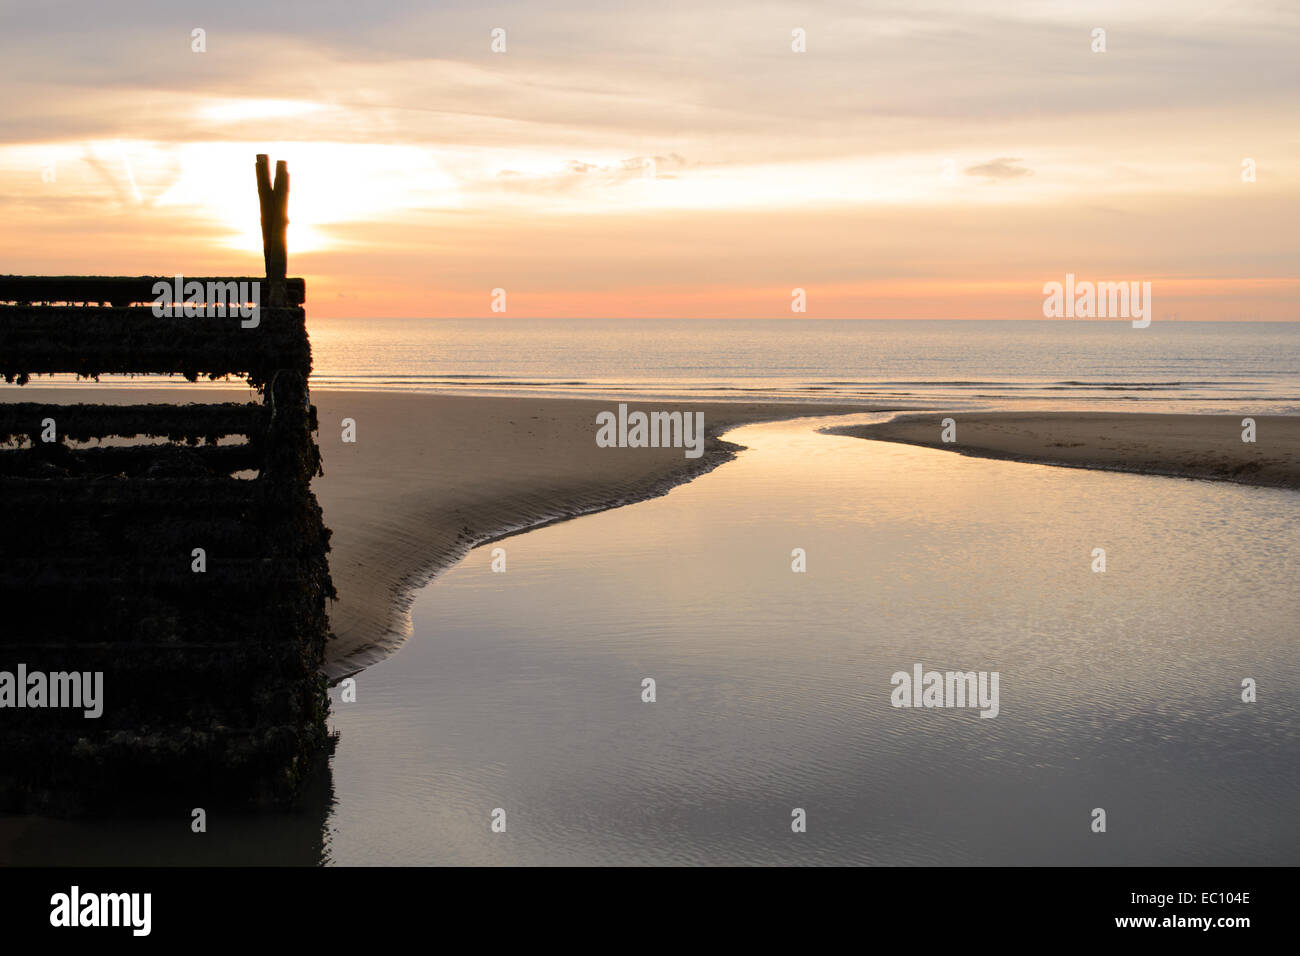 La mattina presto sorgere del sole sulla spiaggia con la bassa marea raffigurante un meraviglioso paesaggio marino all'alba Foto Stock